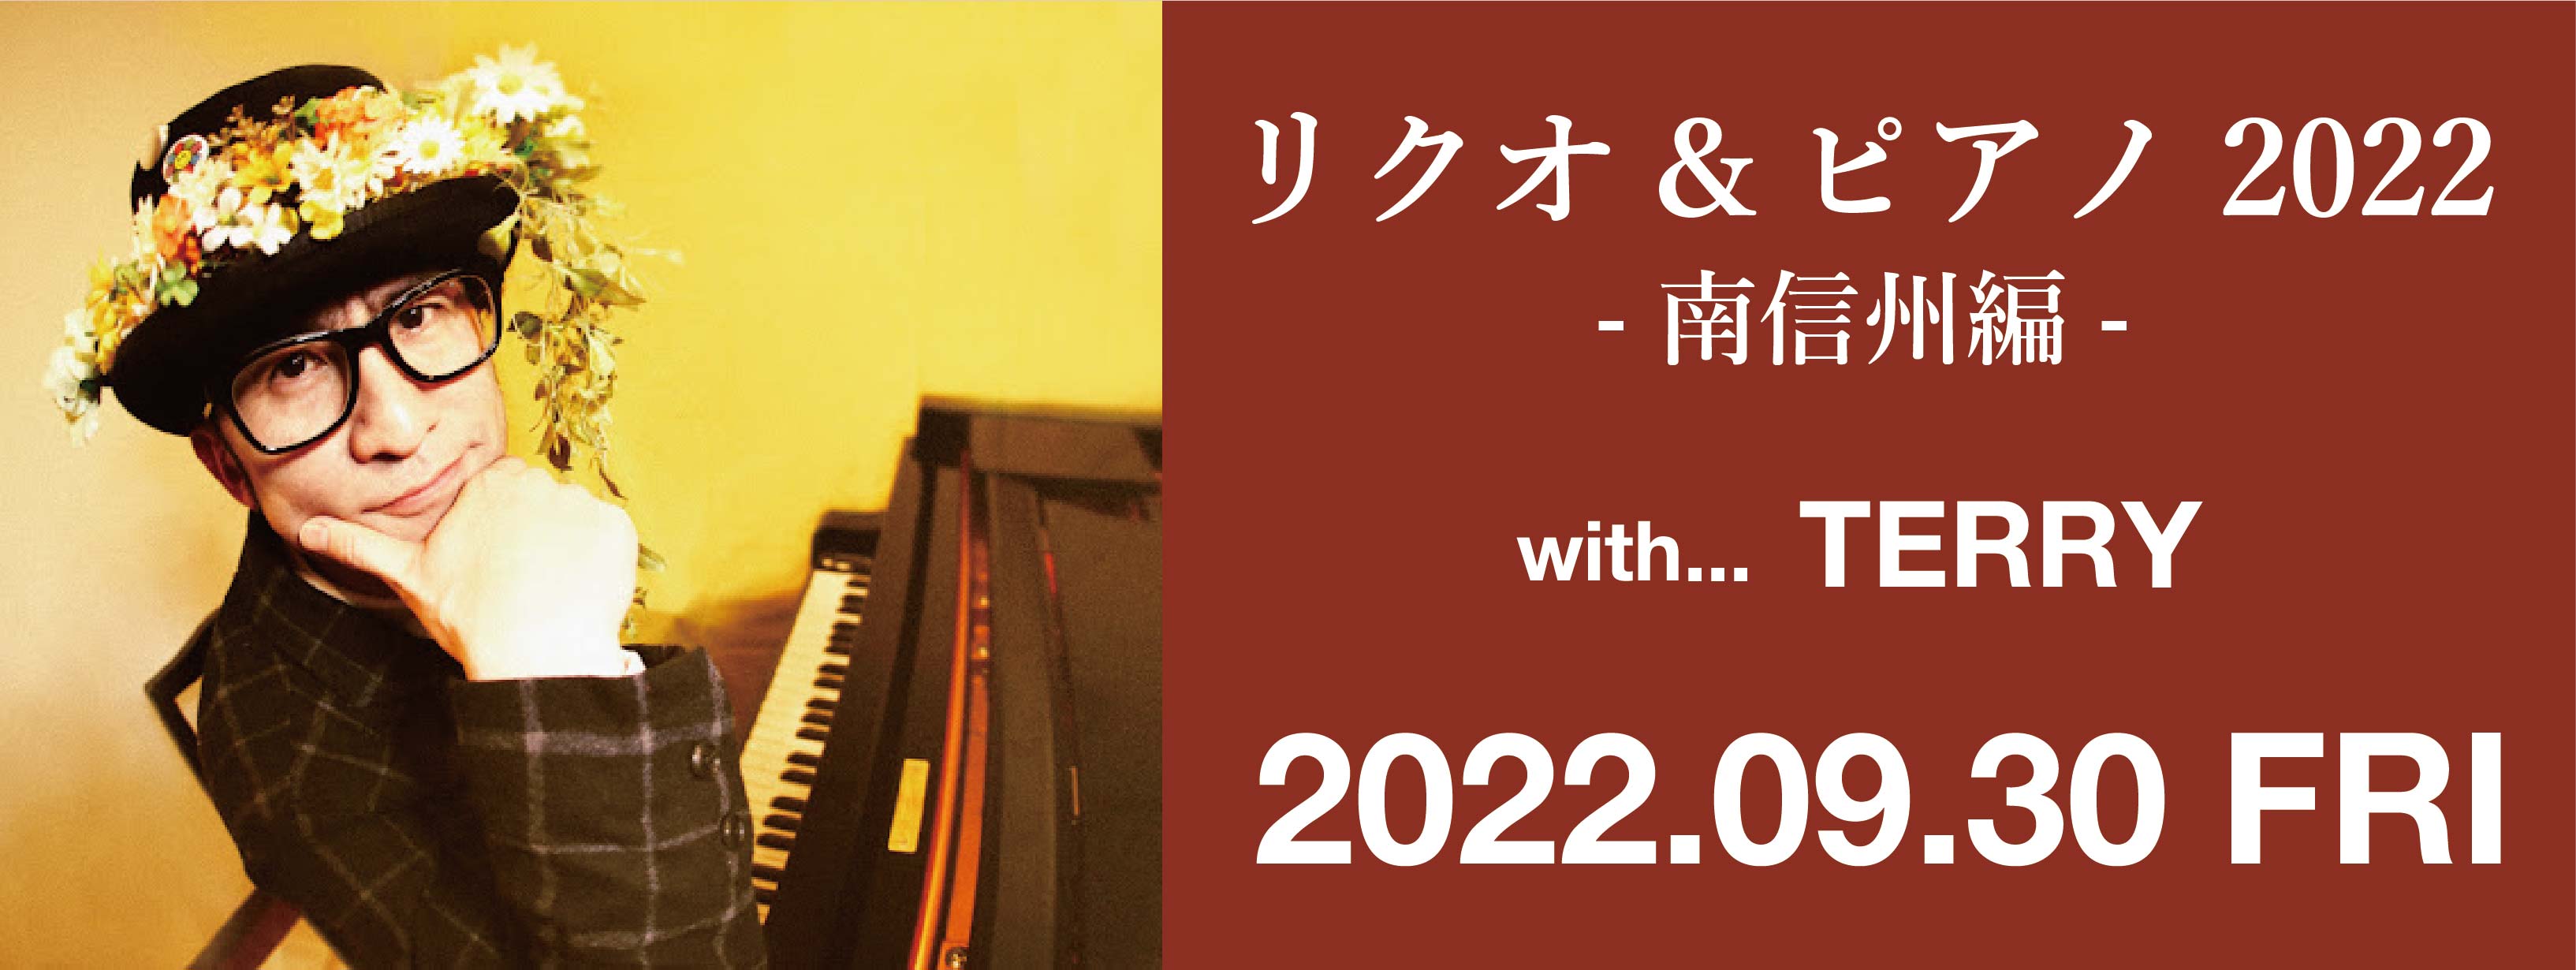 リクオ&ピアノ2022 -南信州編-